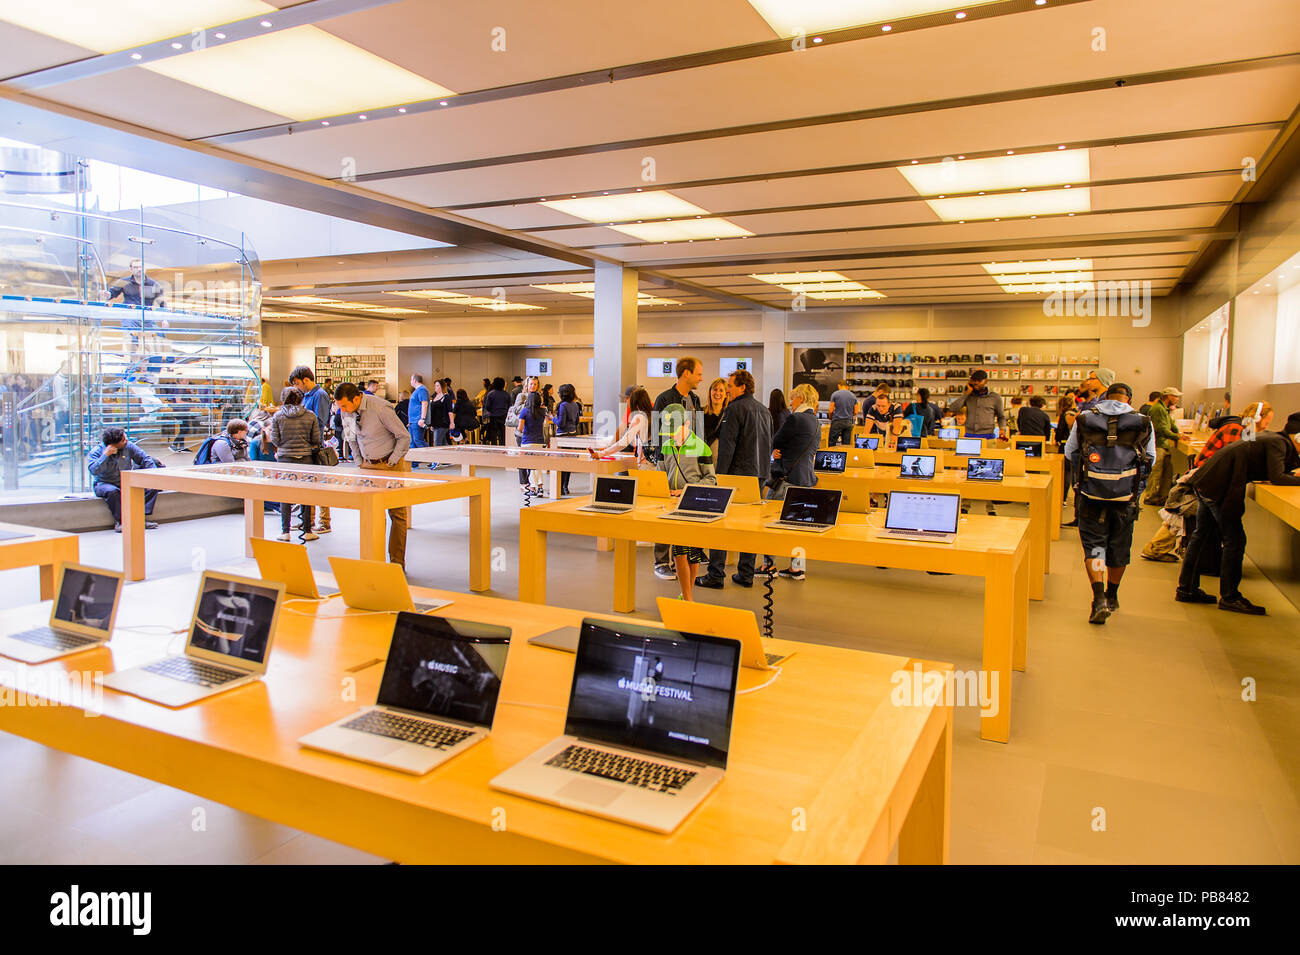 NEW YORK, USA - Sep 22, 2015 : Apple store sur la Cinquième Avenue, New York. Le magasin vend des ordinateurs personnels Macintosh, logiciels, iPod, iPad, iPhone, un Banque D'Images